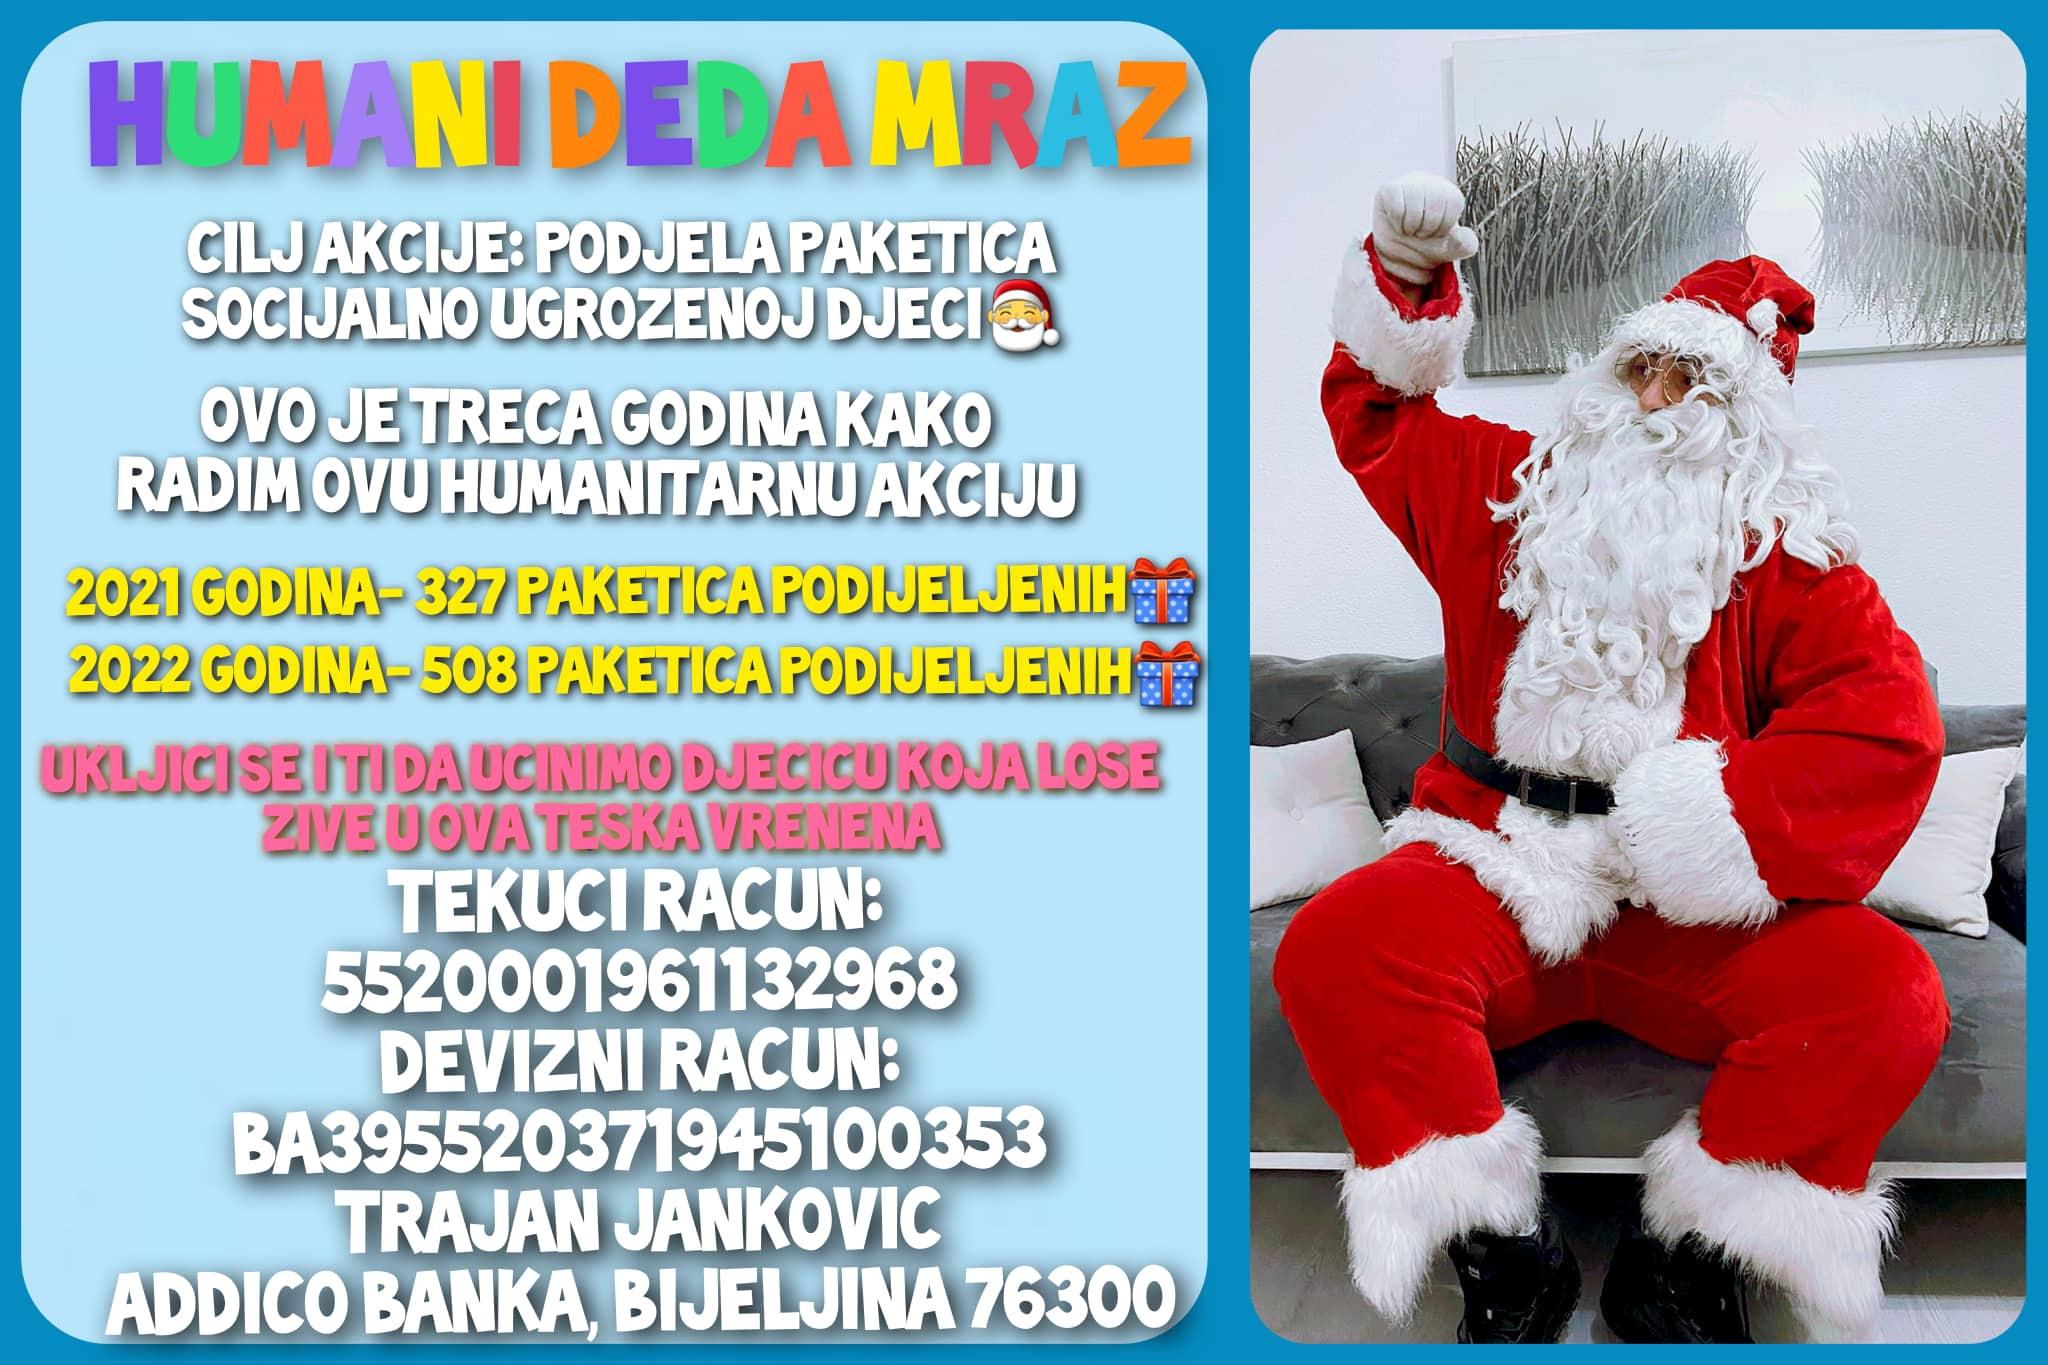 Djed Mraz iz Bijeljine traži pomoć građana: Podijelimo paketiće socijalno ugroženoj djeci BiH